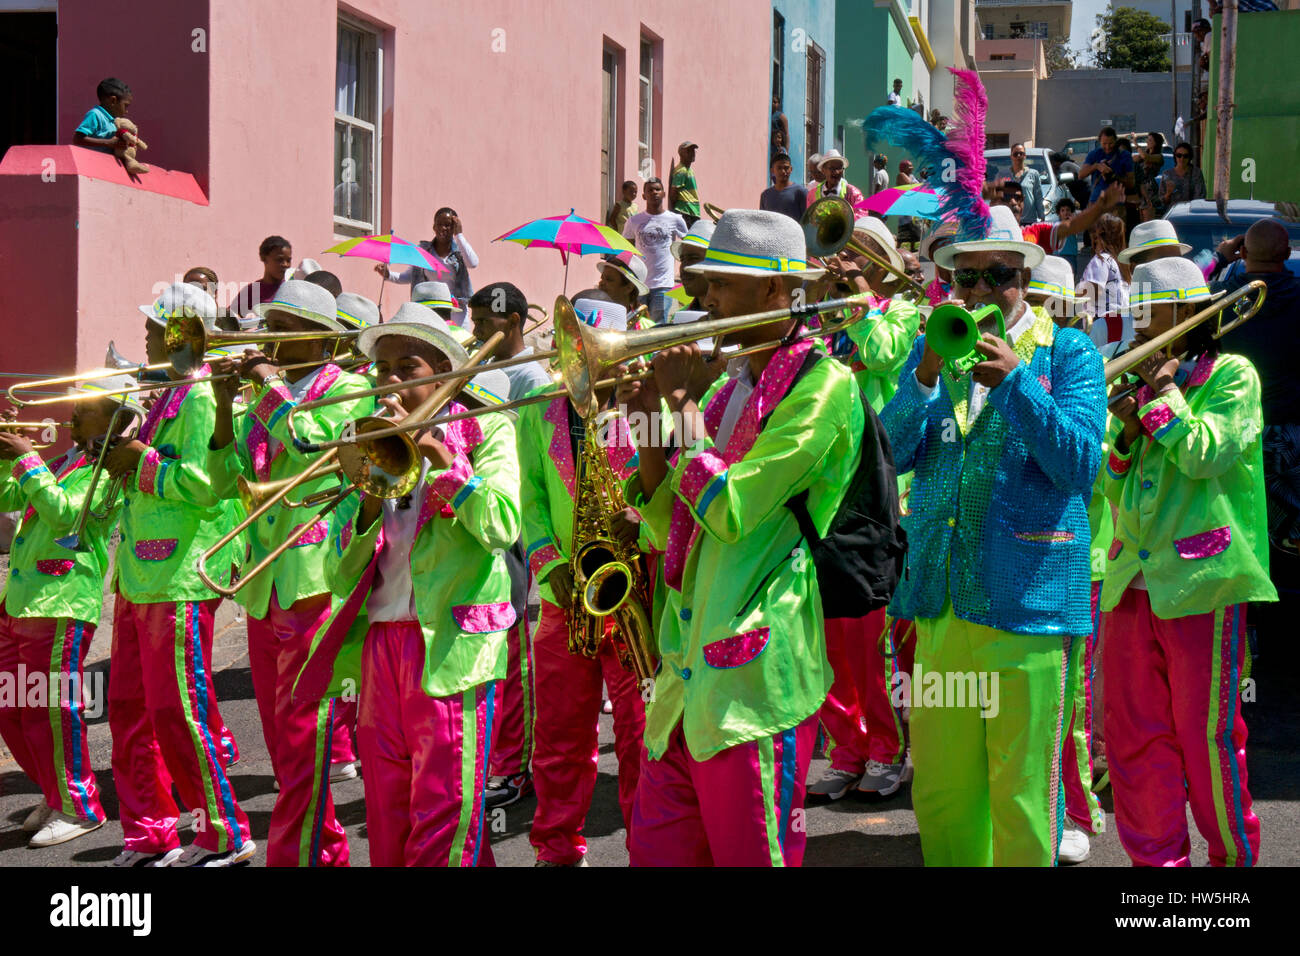 Streetparade-Festival mit Musik-Band von Spielleuten und Tänzern im Karneval Atmosphäre, Bo-Kapp, malaiische Viertel, Cape Town, Südafrika Stockfoto